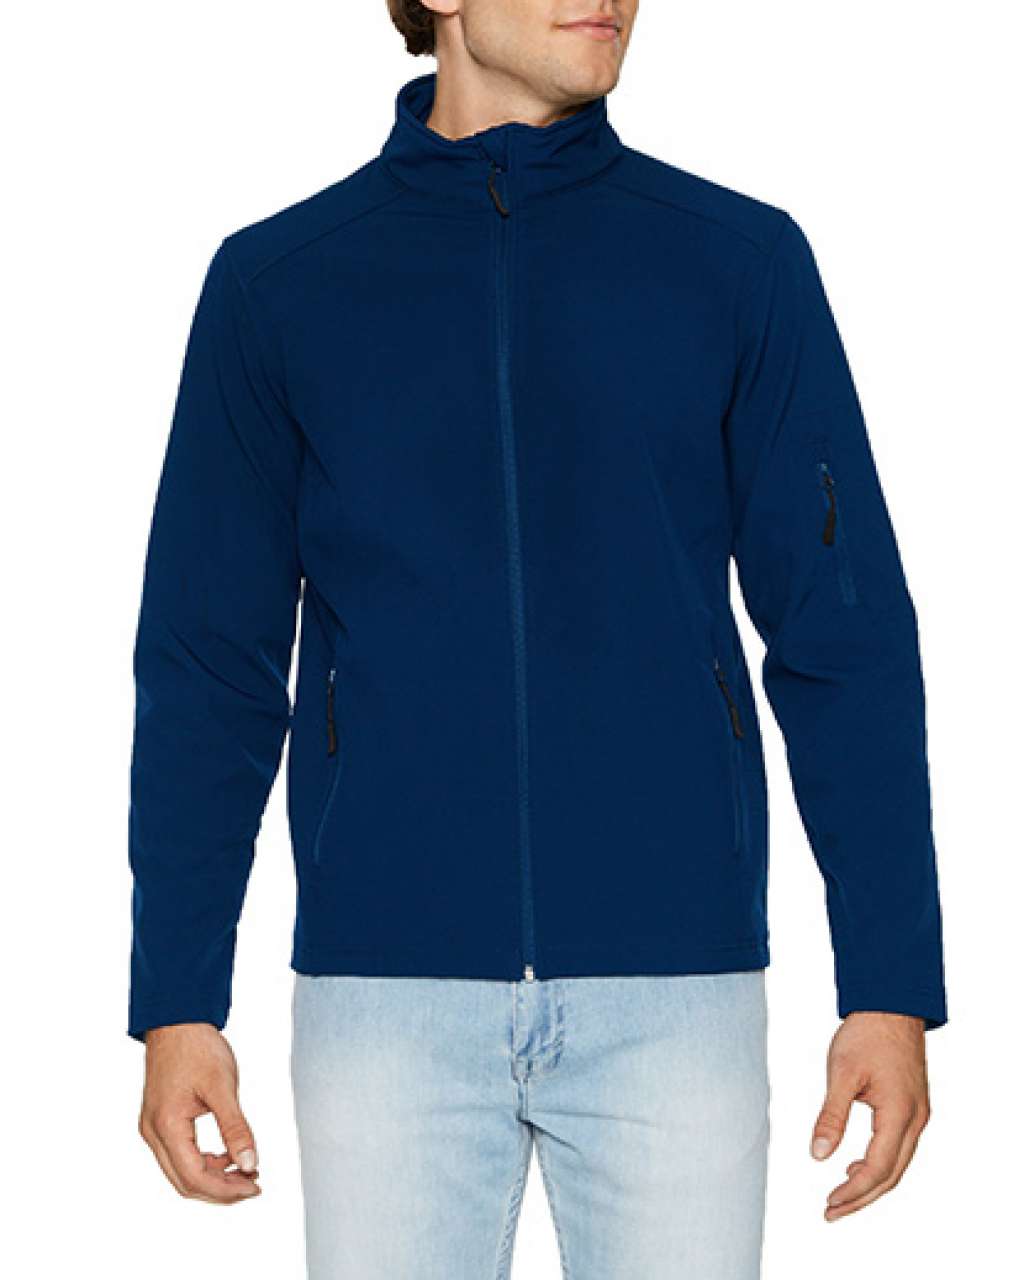 Gildan Hammer Unisex Softshell Jacket - blue